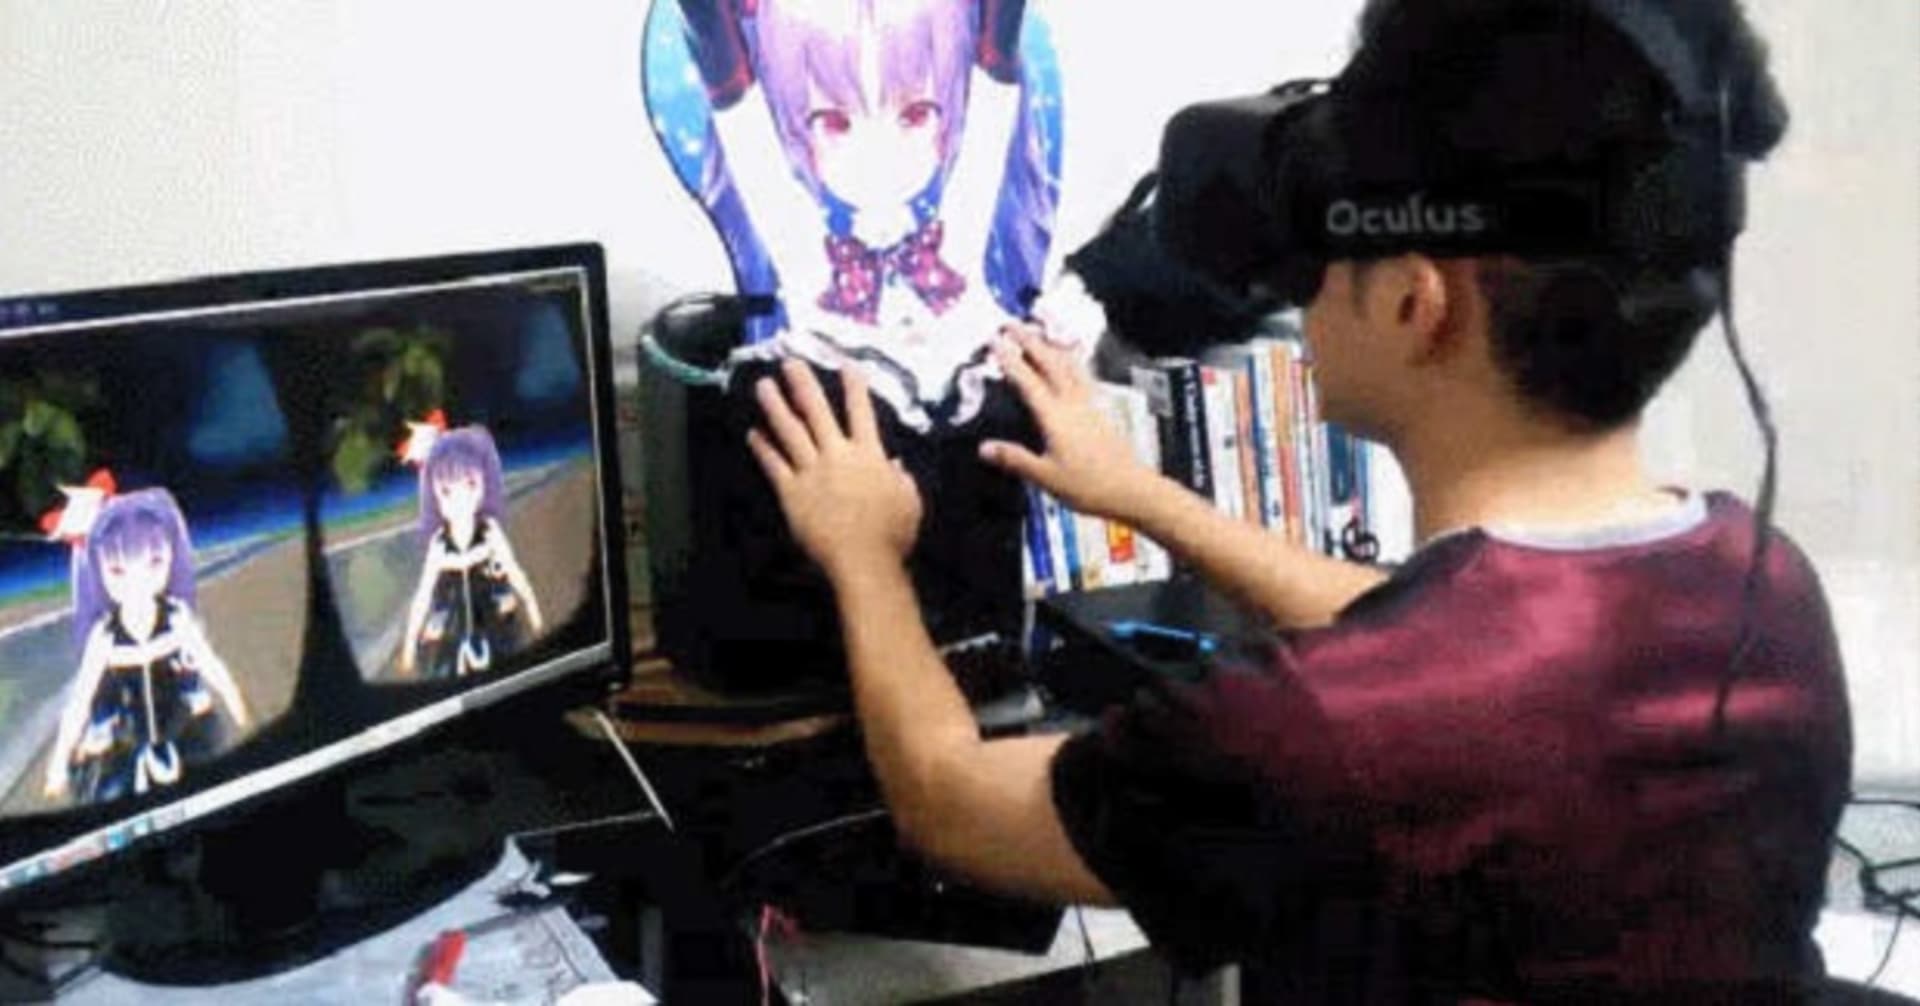 Virtuální pornografie a Oculus Rift